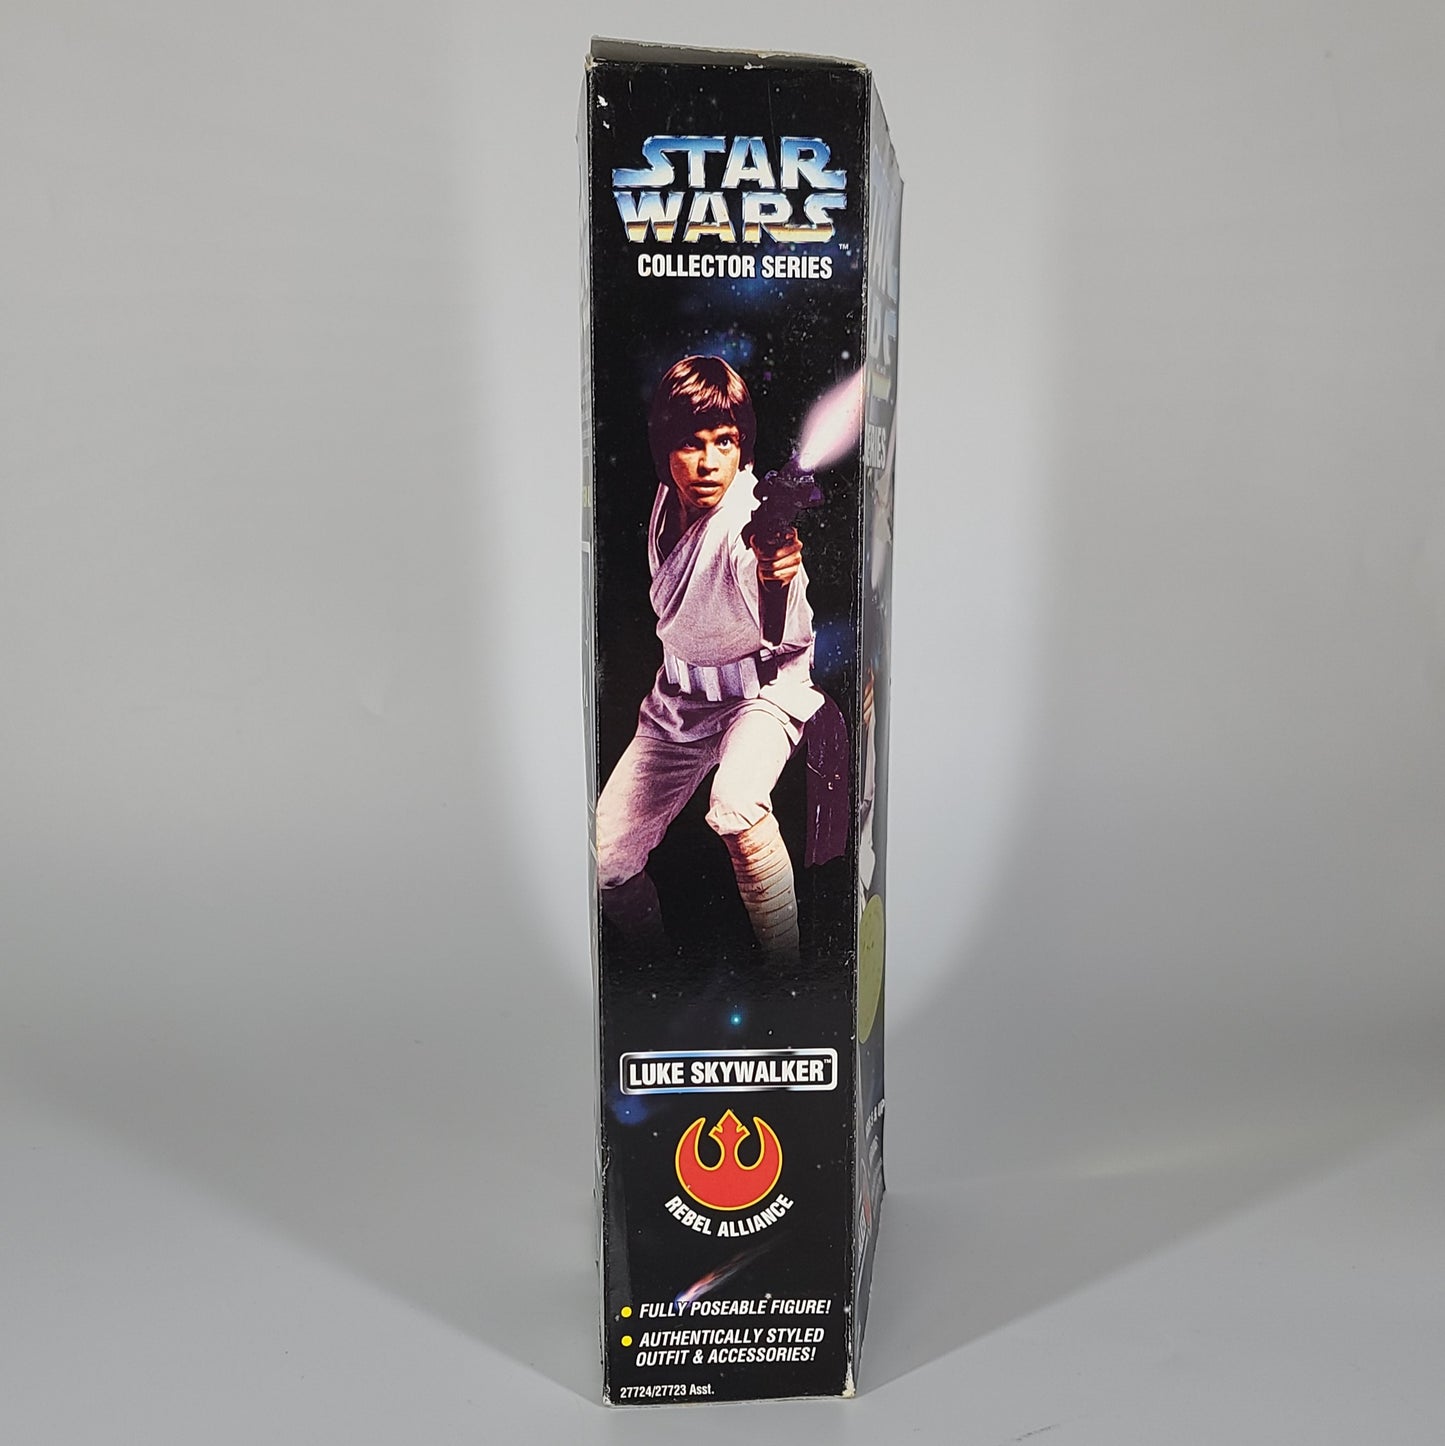 Star Wars 'Luke Skywalker' Action Figure